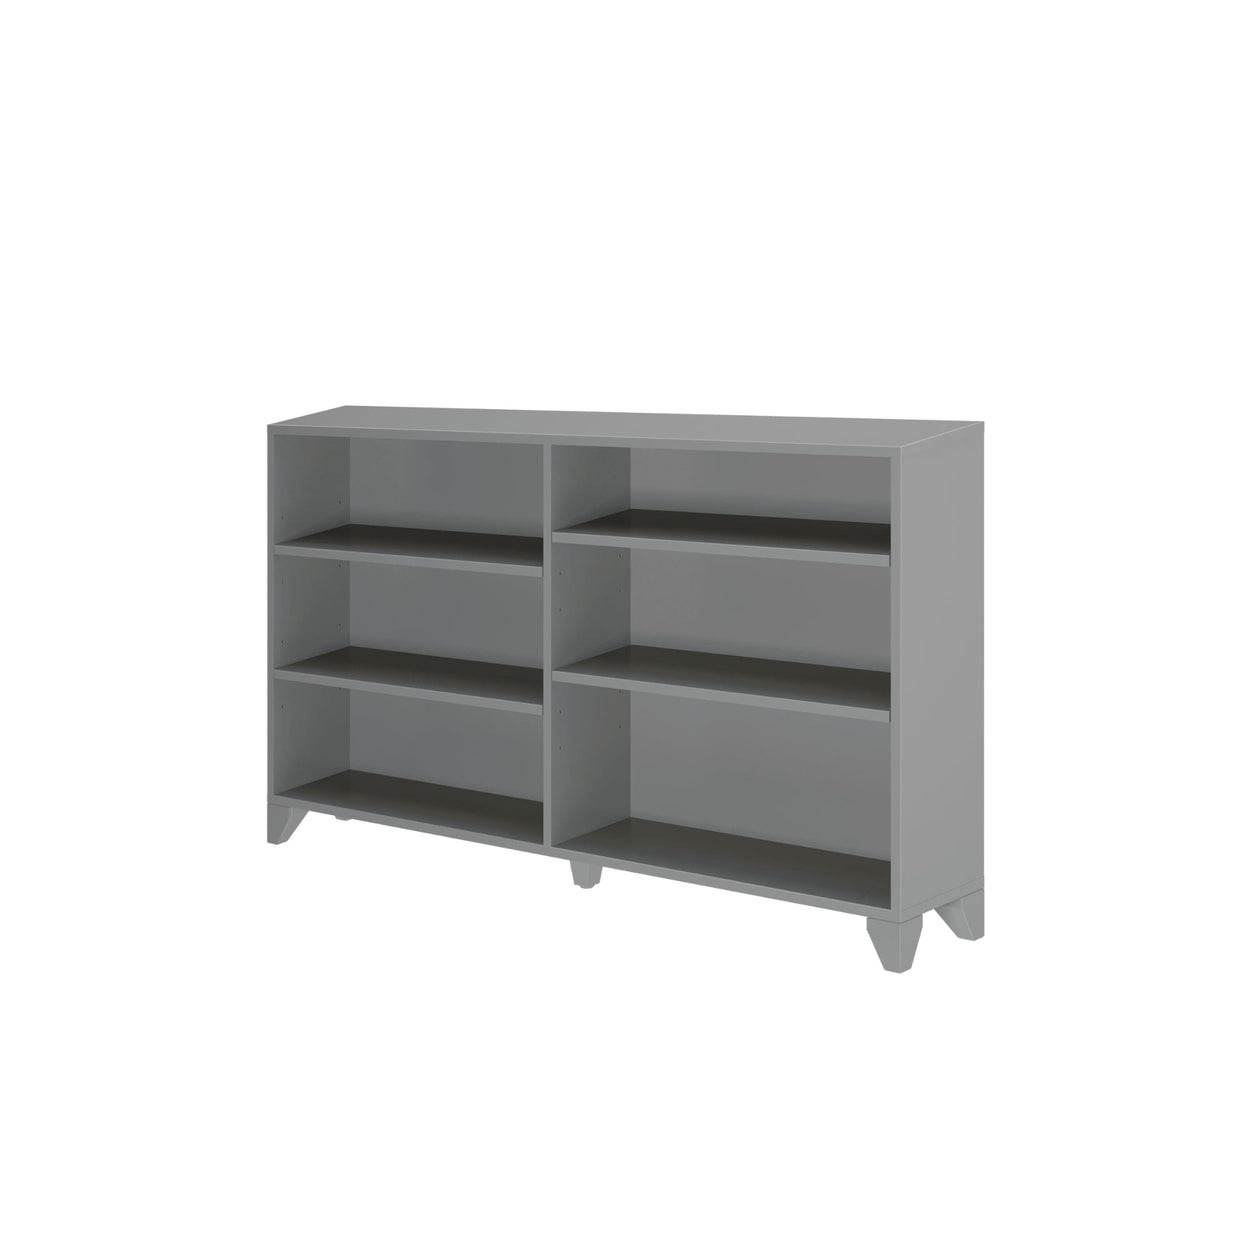 184760-121 : Furniture Classic 6-Shelf Bookcase, Grey